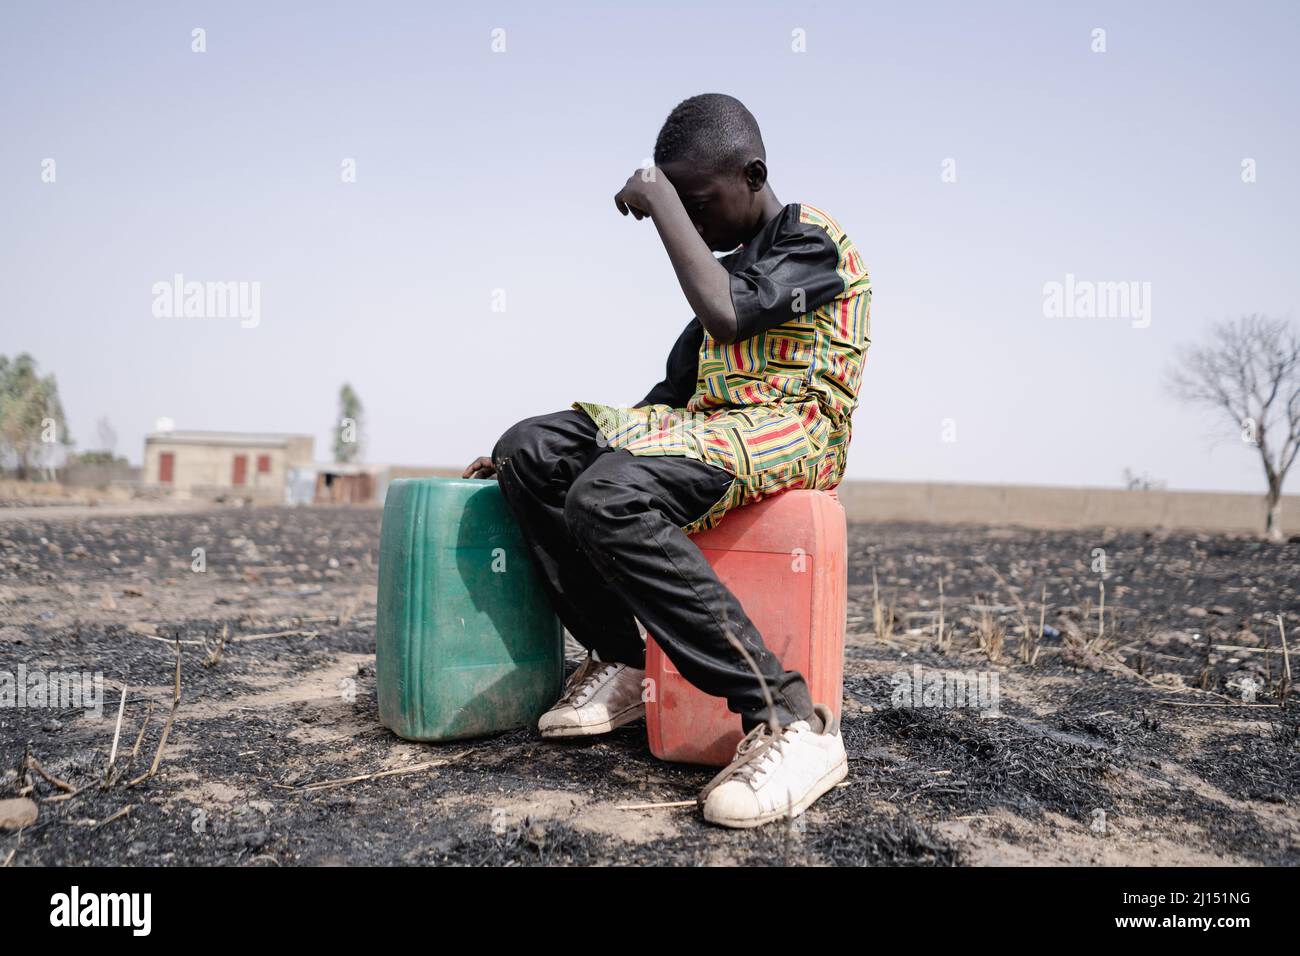 L'adolescent africain a tendu pour marcher de longues distances pour recueillir l'eau propre.symbole de pénurie d'eau. Banque D'Images